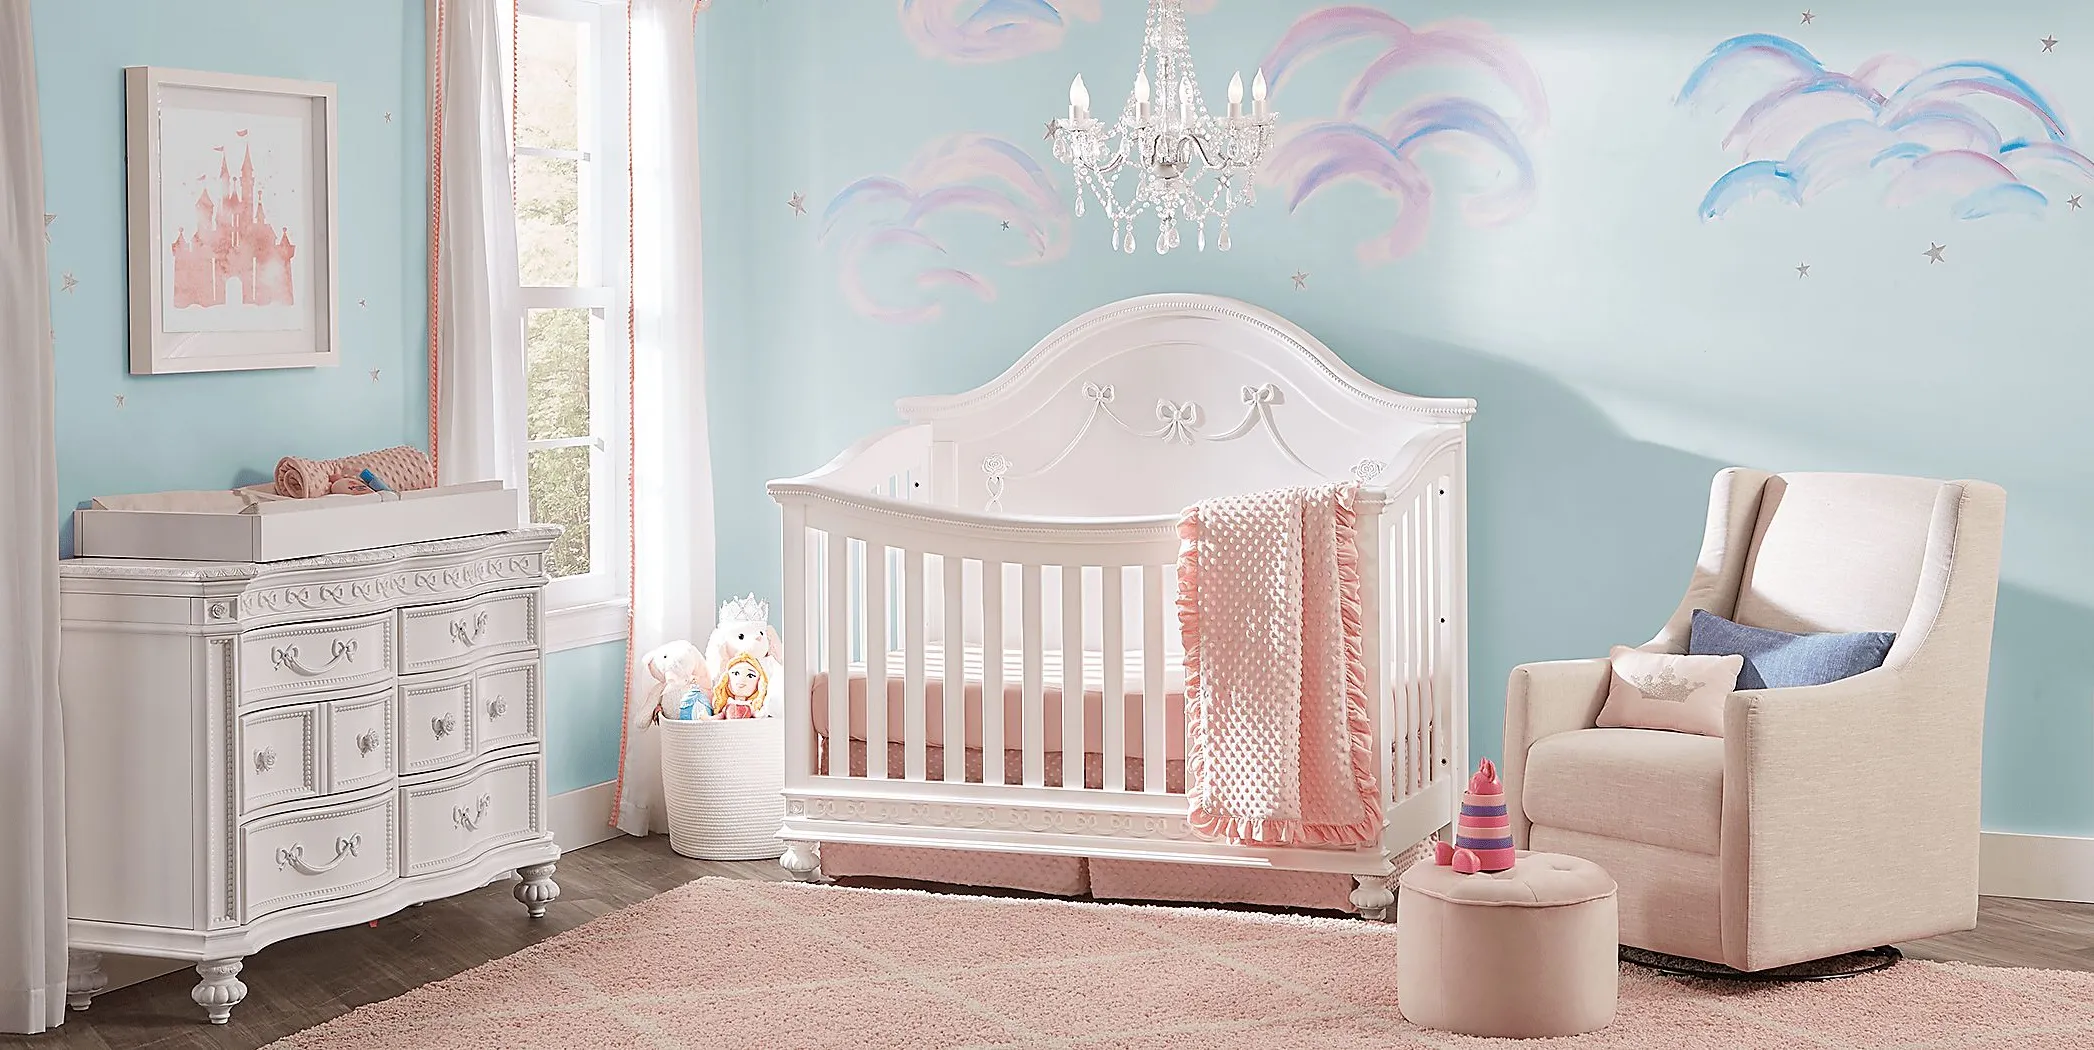 Disney Princess Fairytale White 4 Pc Nursery